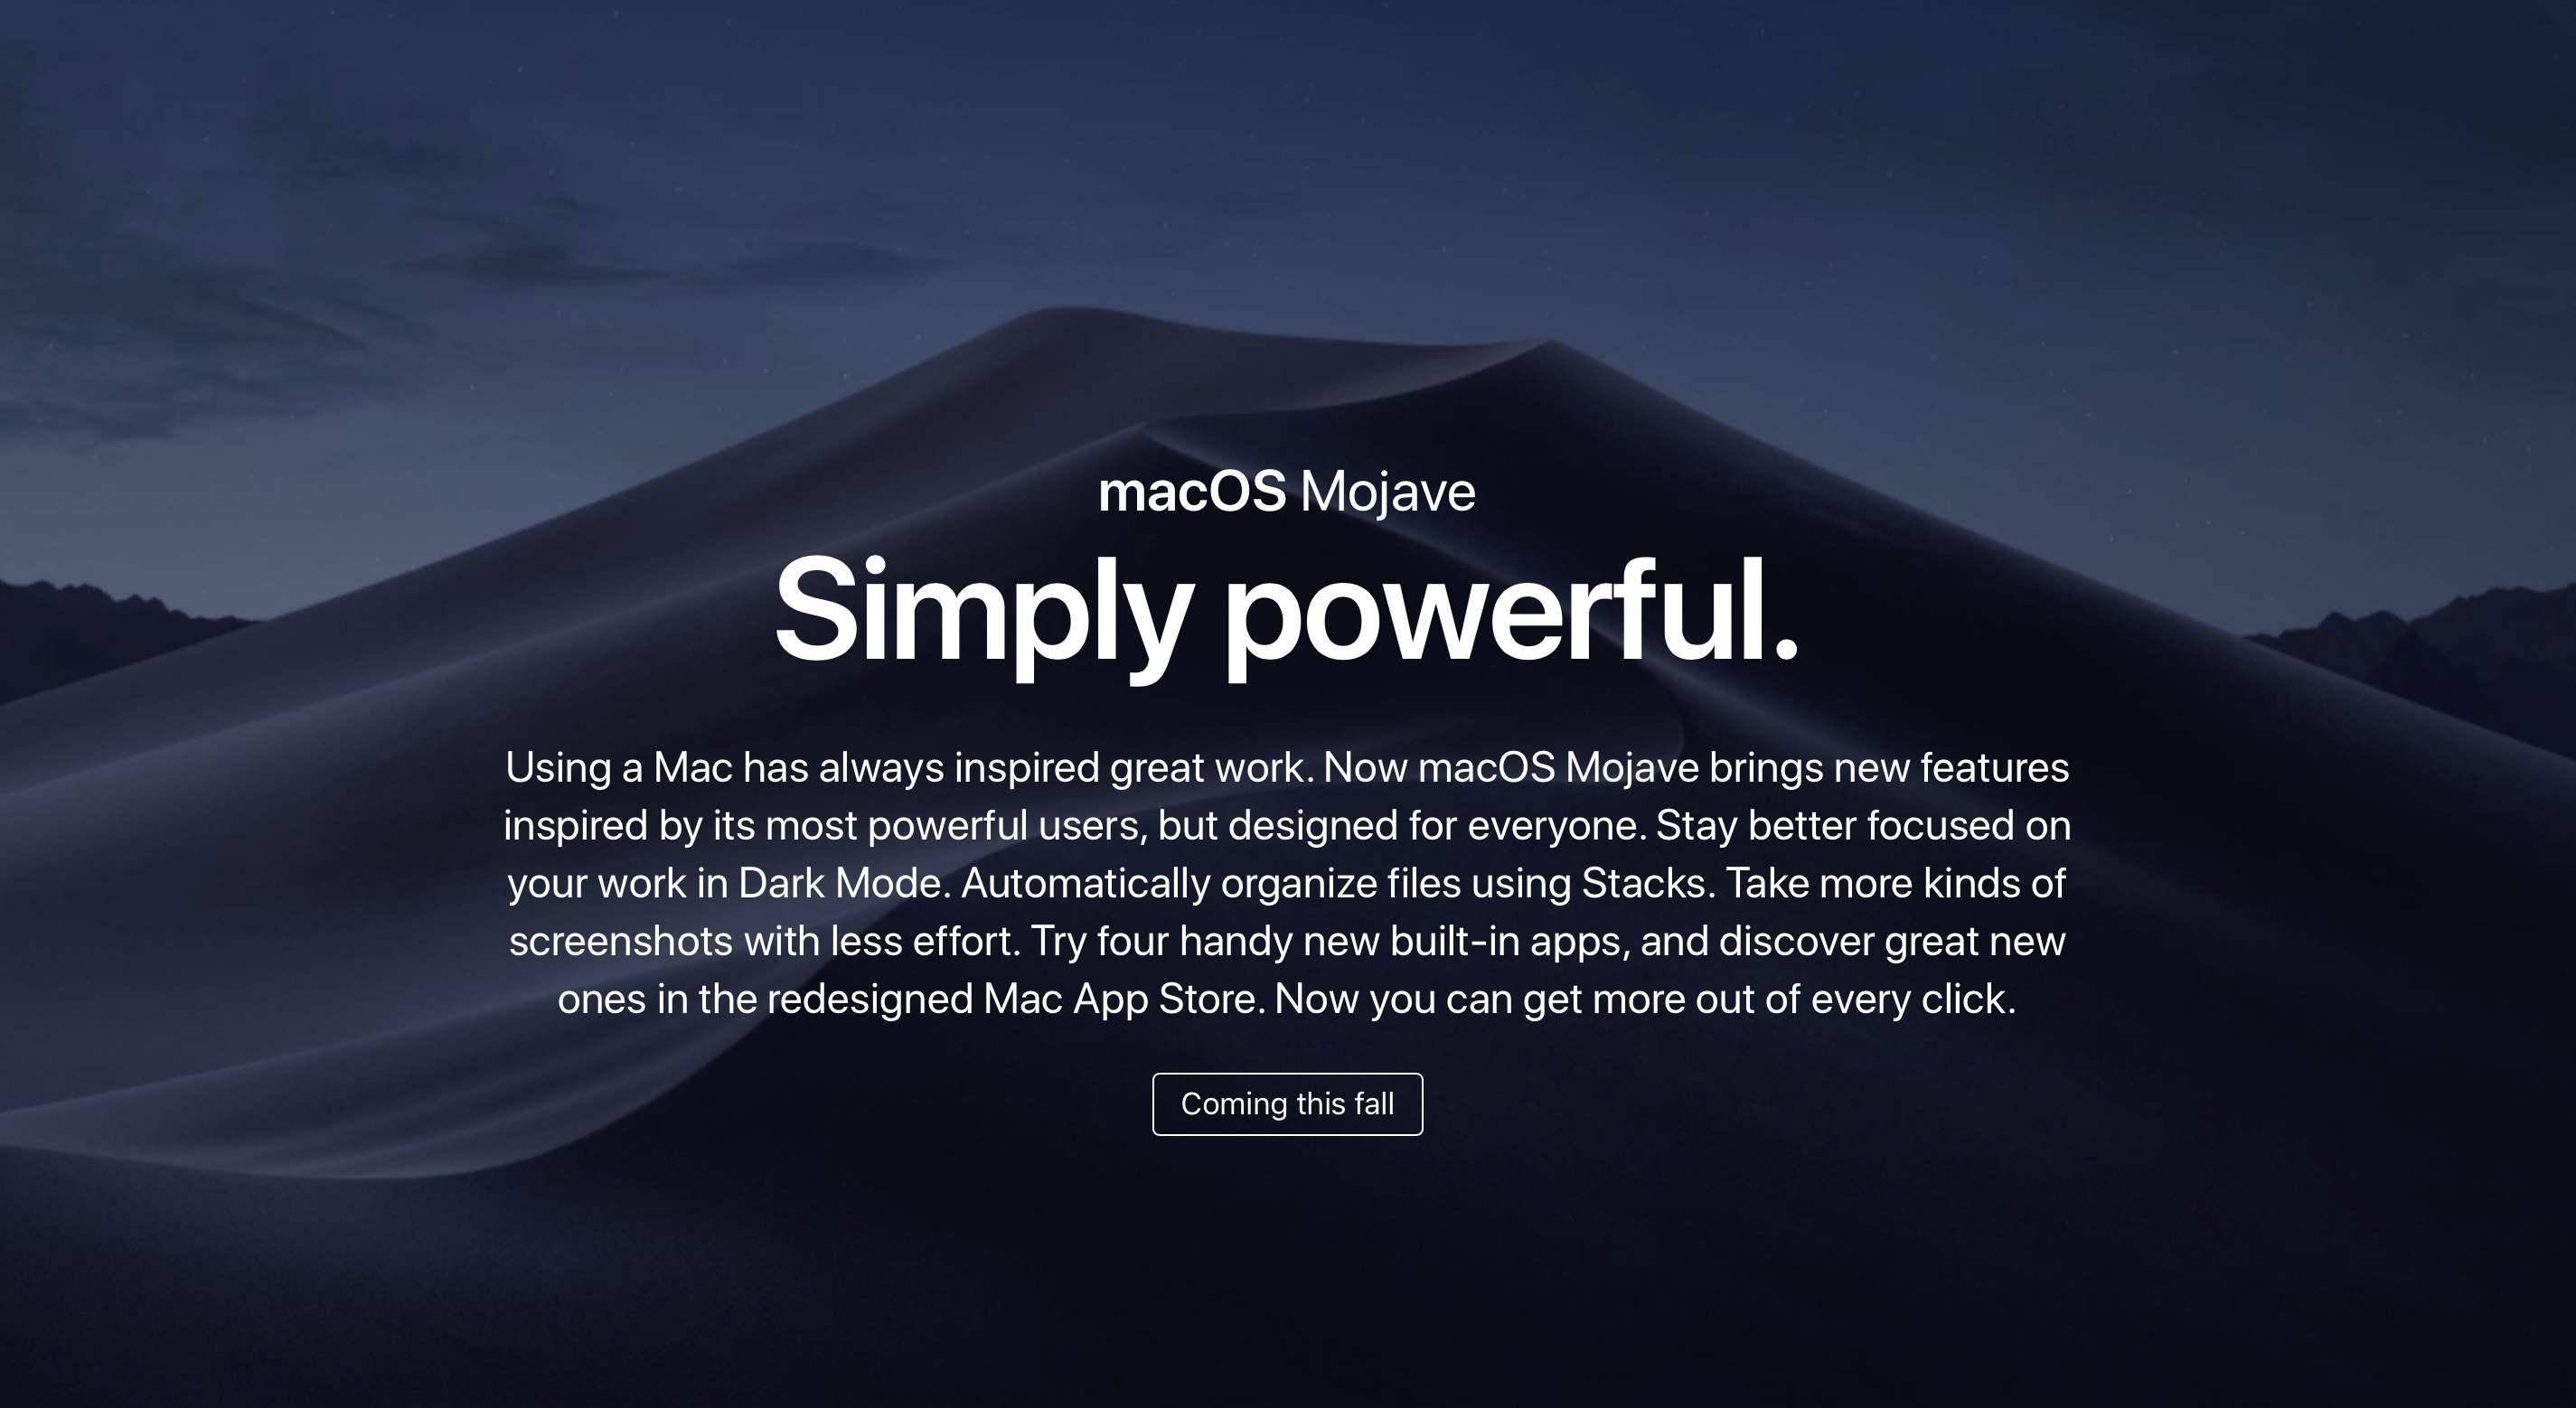 macbook在更新中卡住了_mac mojave 更新 卡住_mac更新卡住了